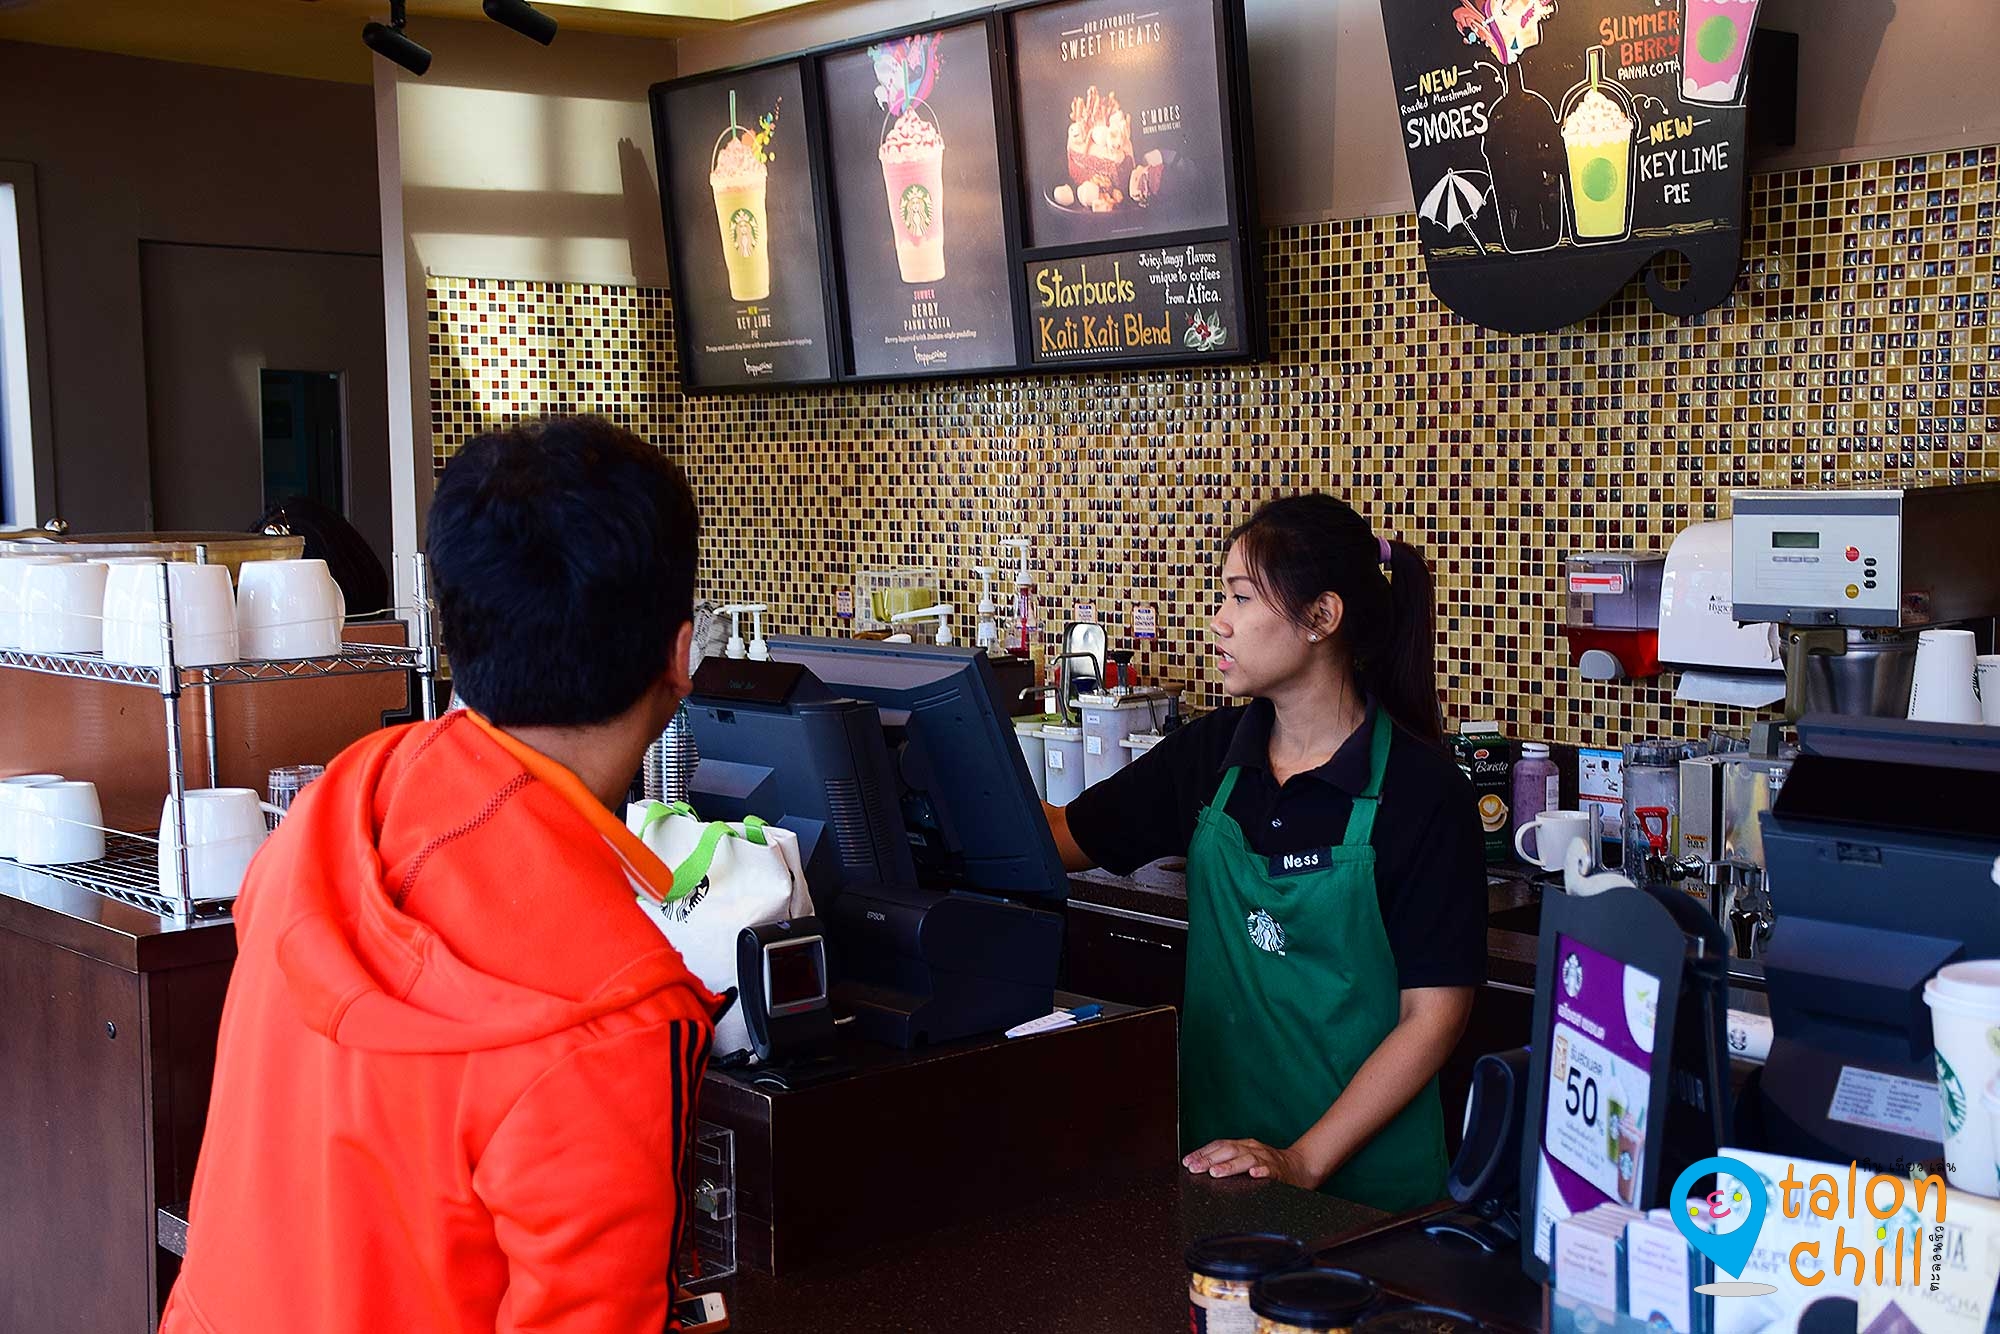 [แกะซอง] บัตรแทนเงินสด และสะสมแต้มของร้านกาแฟ Starbucks